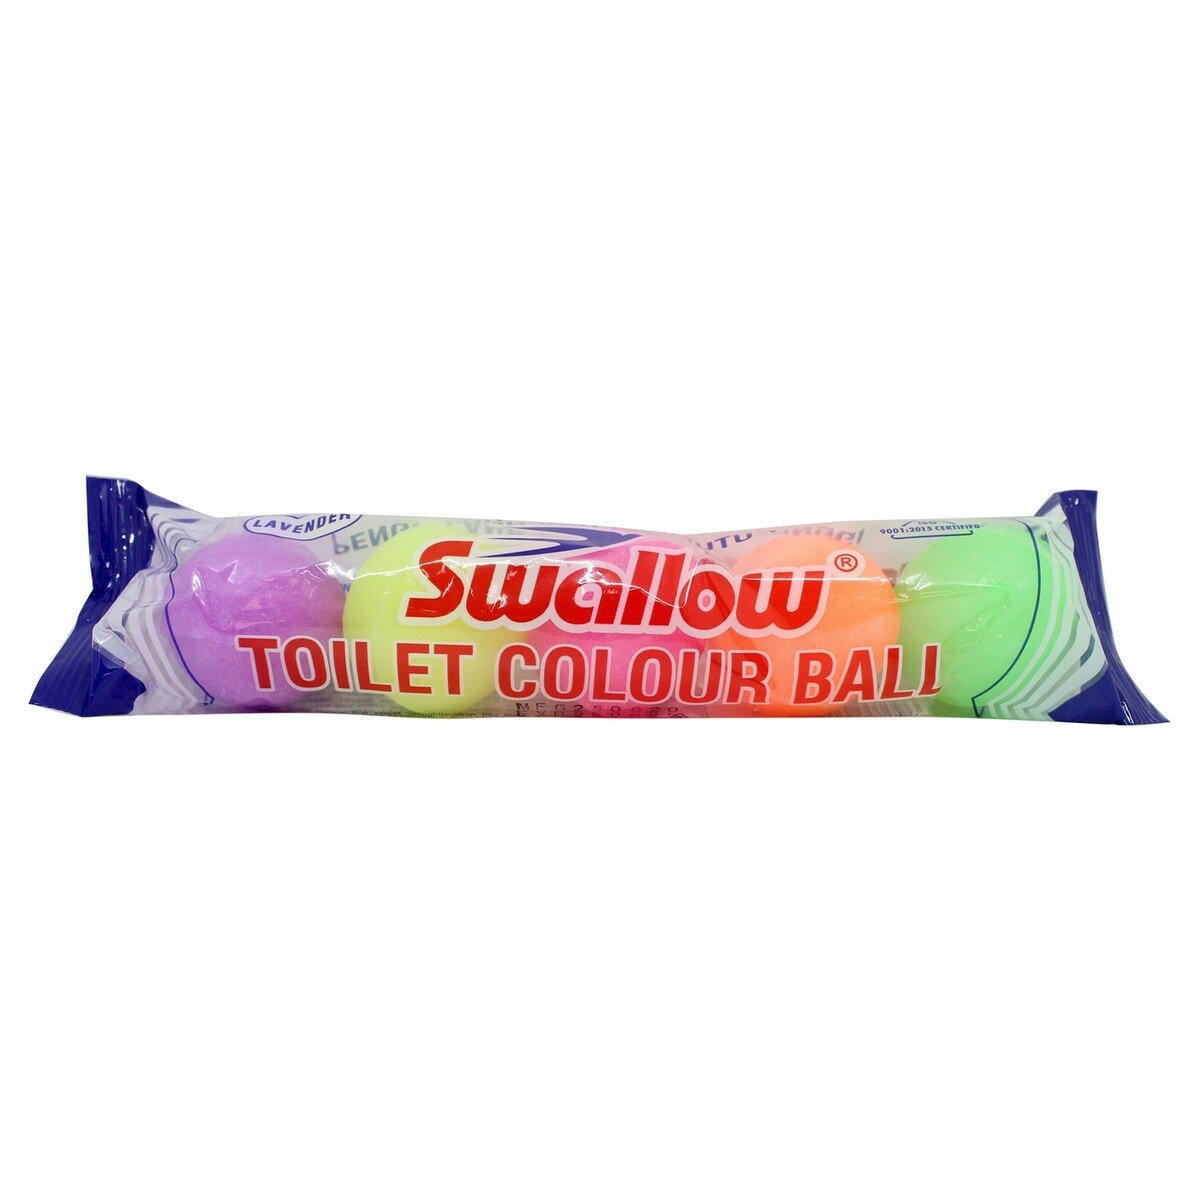 Swallow Toilet Colour Ball S-1093 5pcs